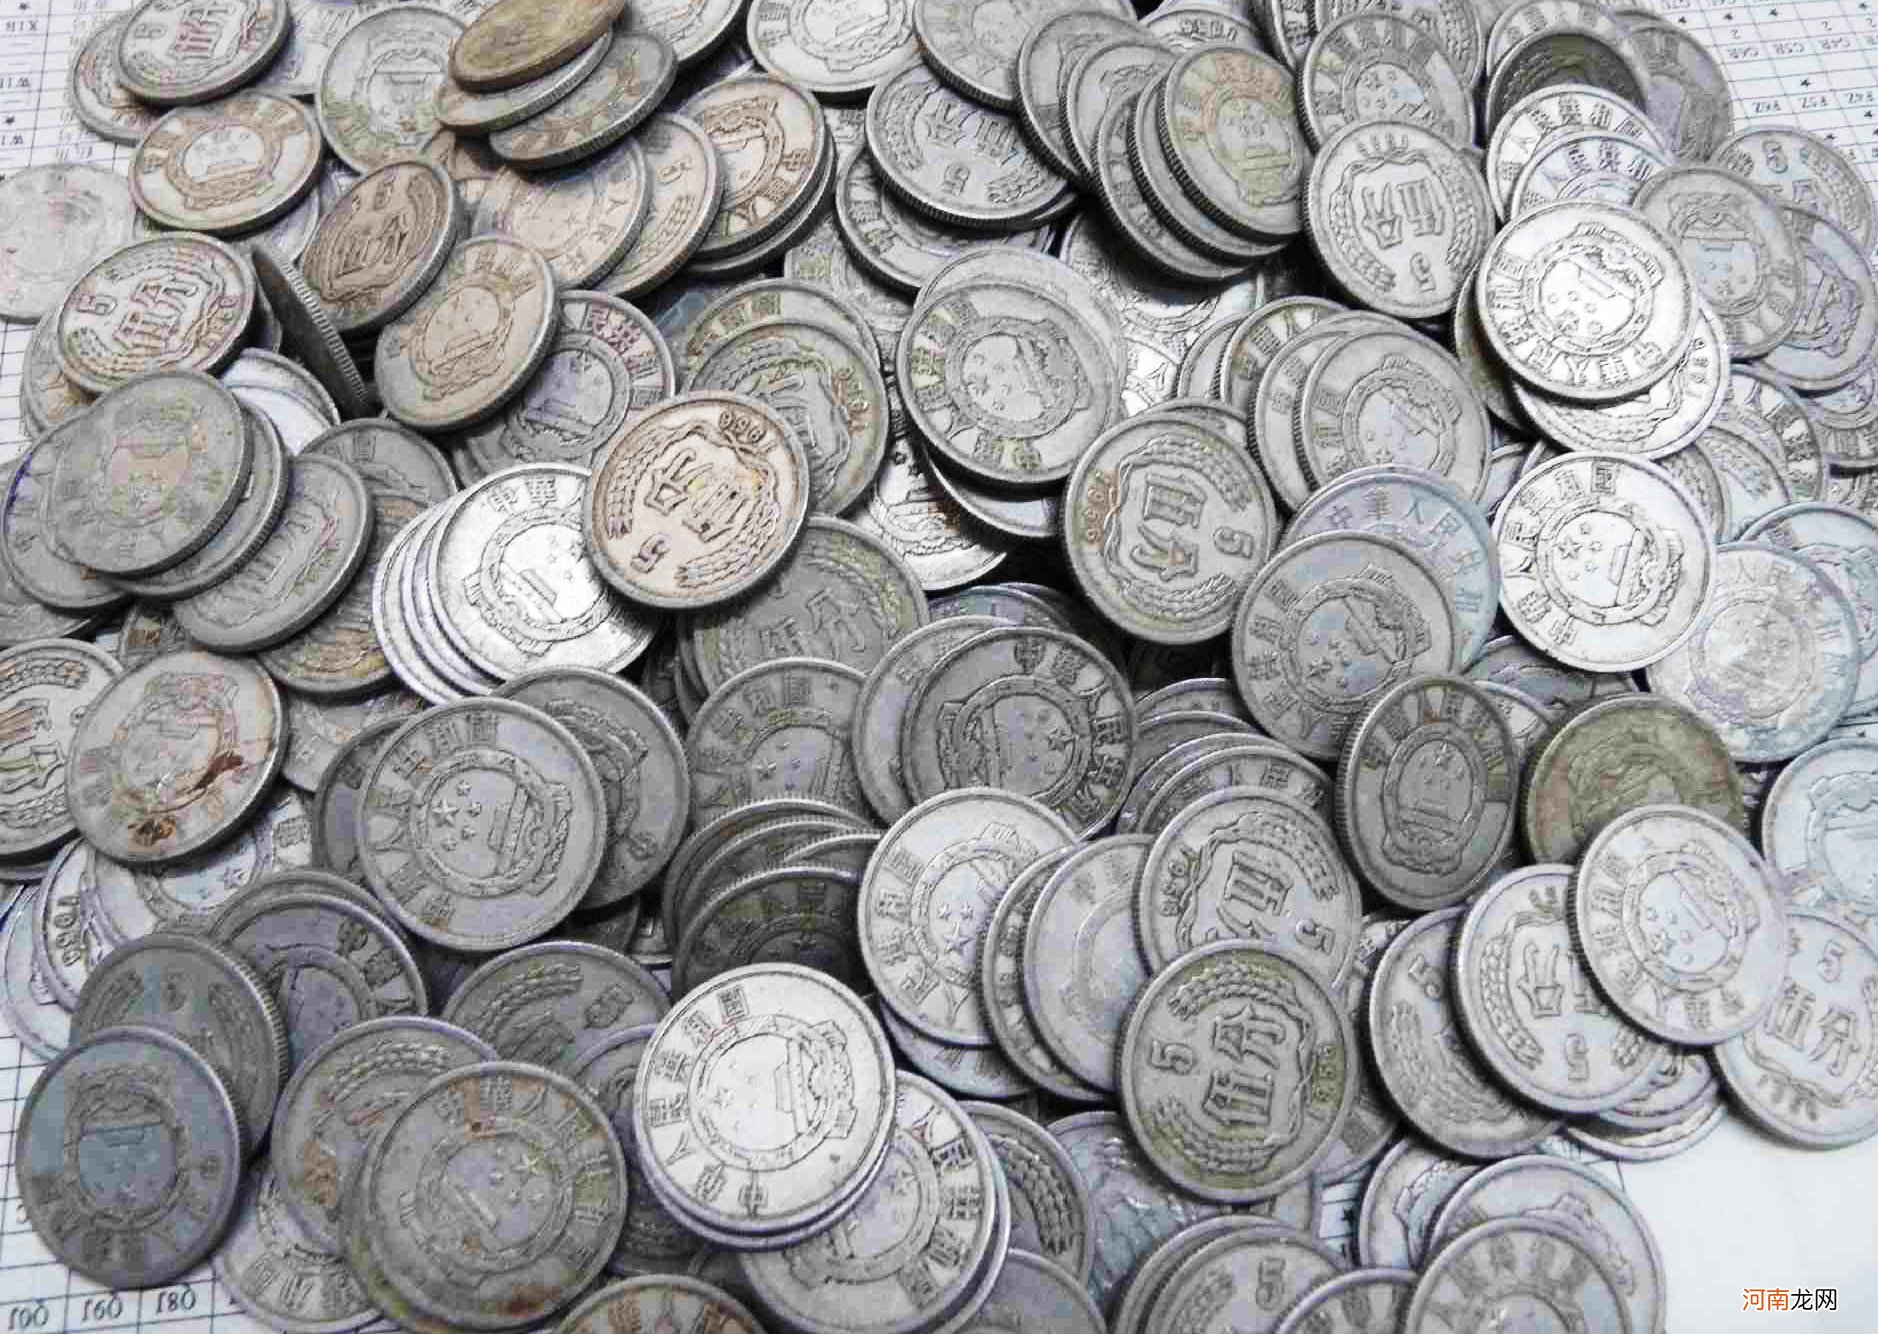 1分硬币升值50万倍 1分硬币价格表